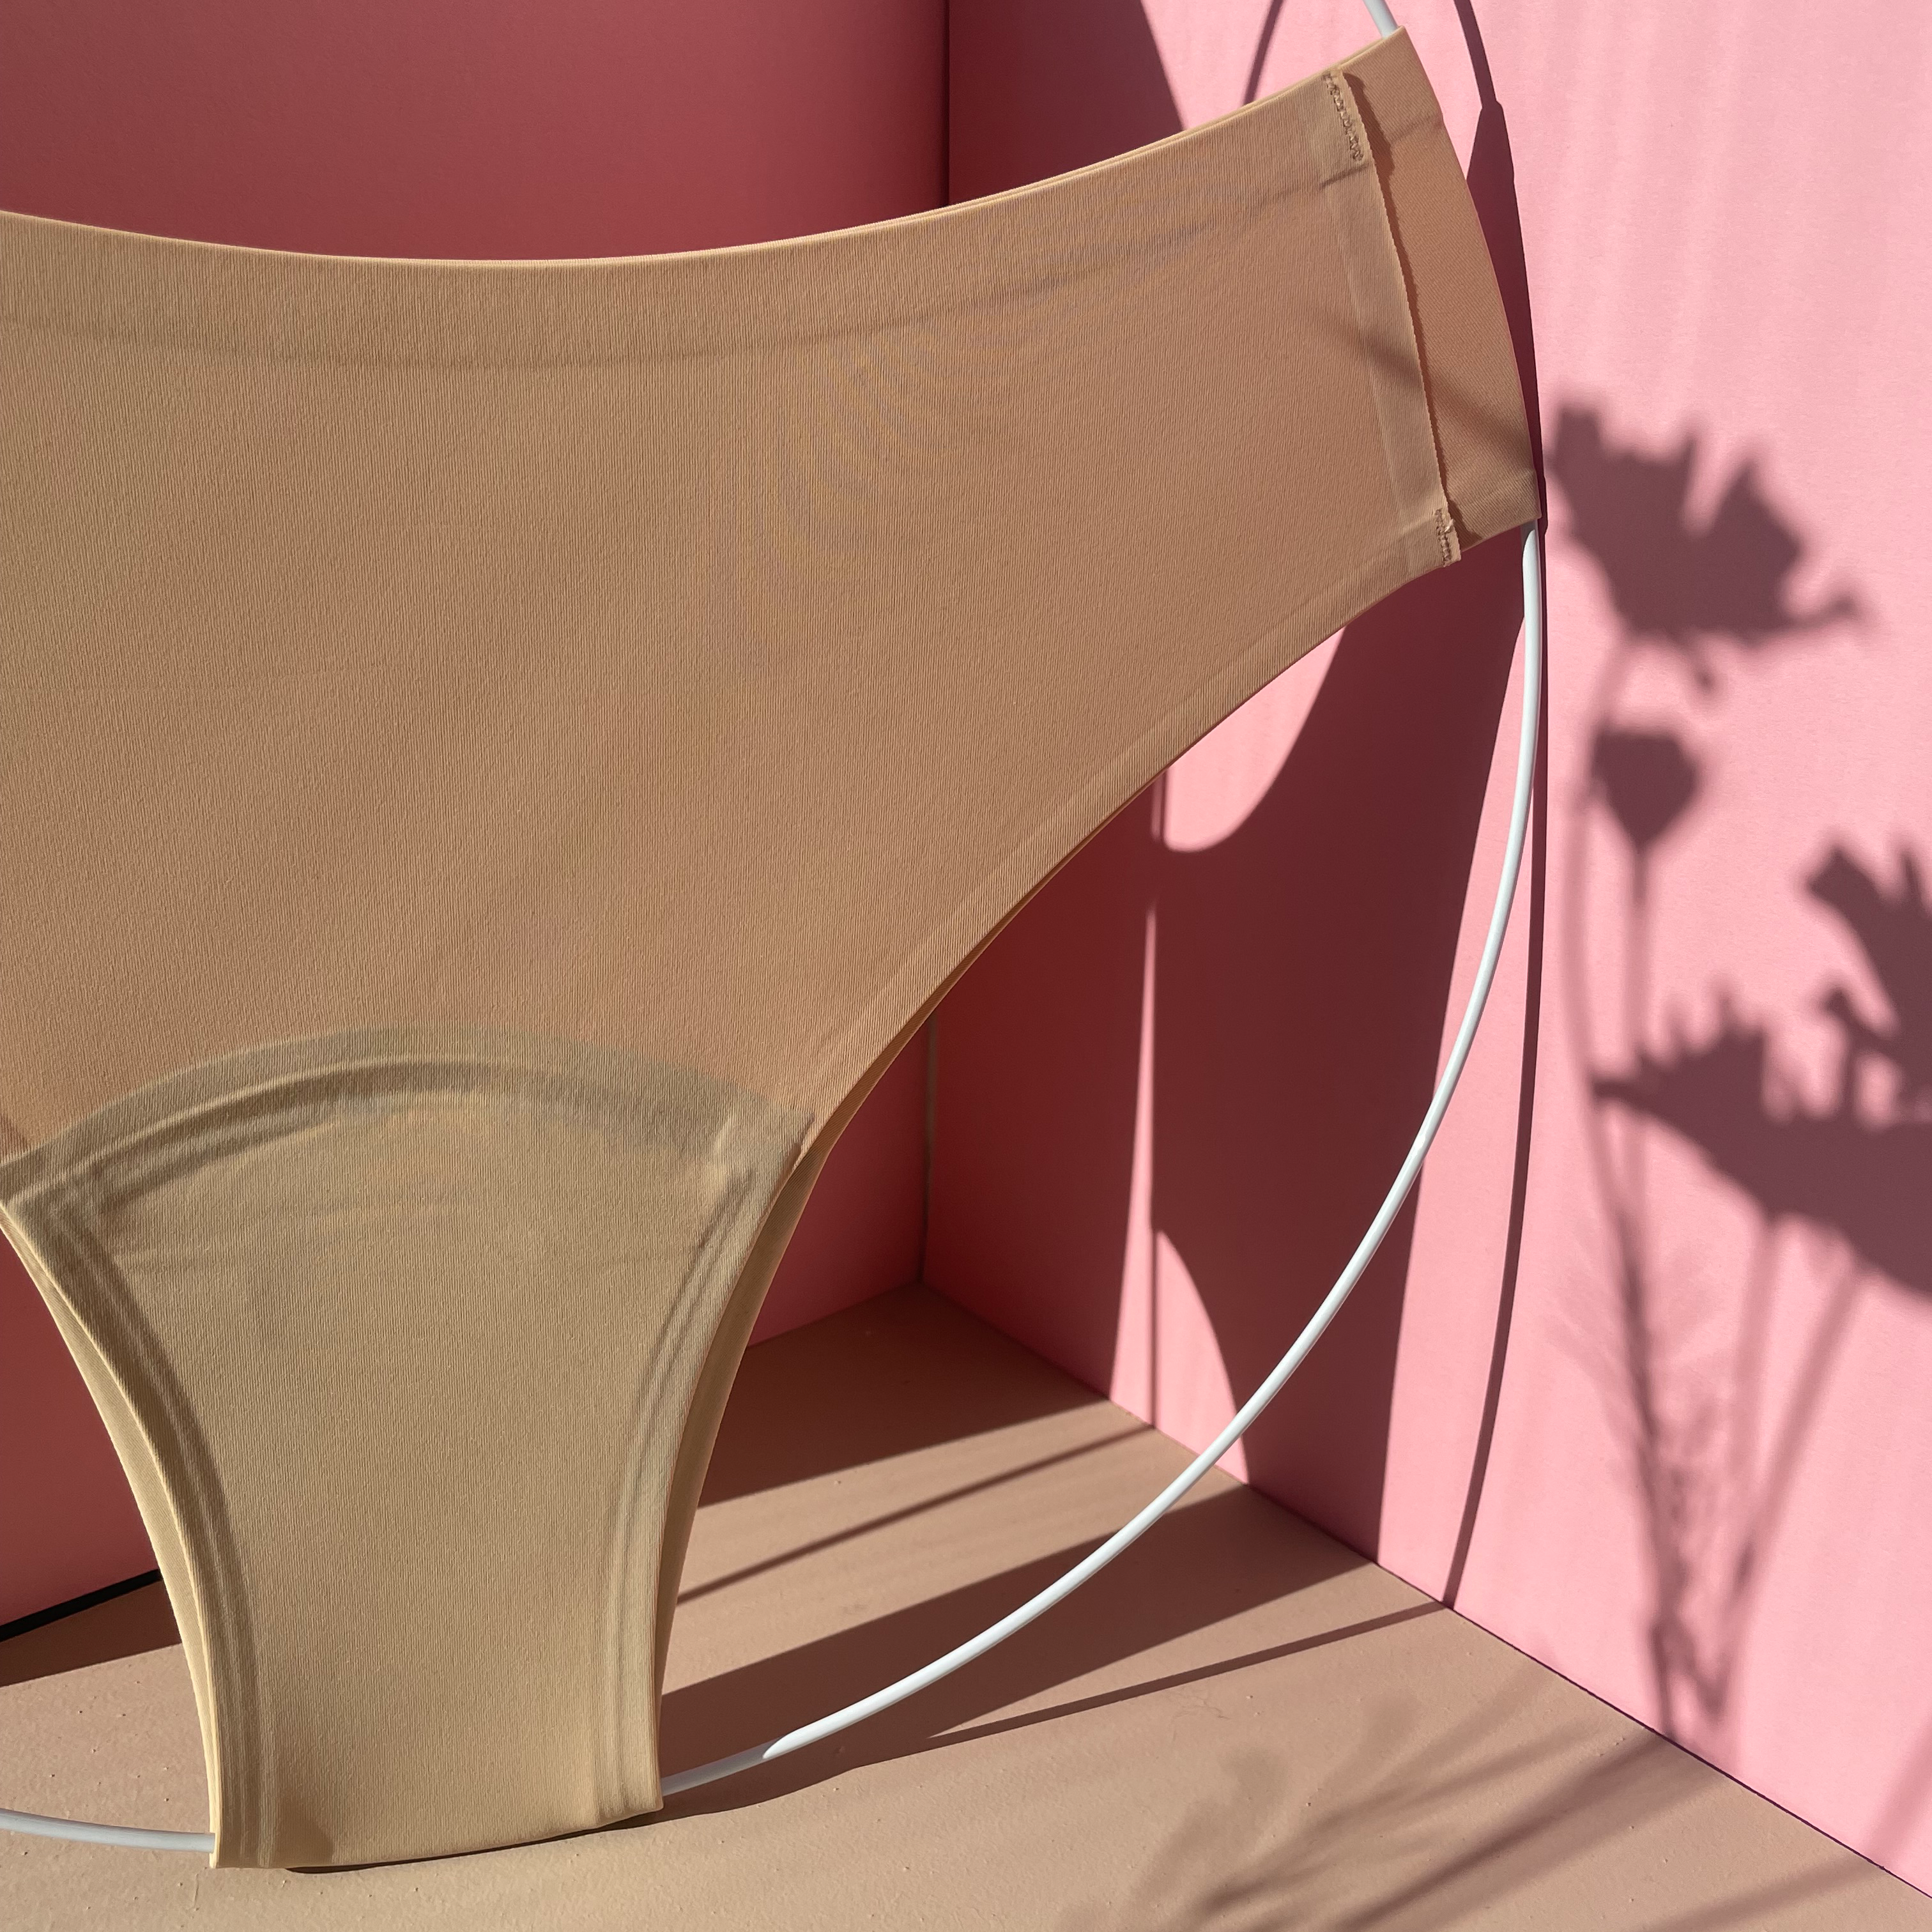 dais period underwear with cheeky cut in beige on pink background.